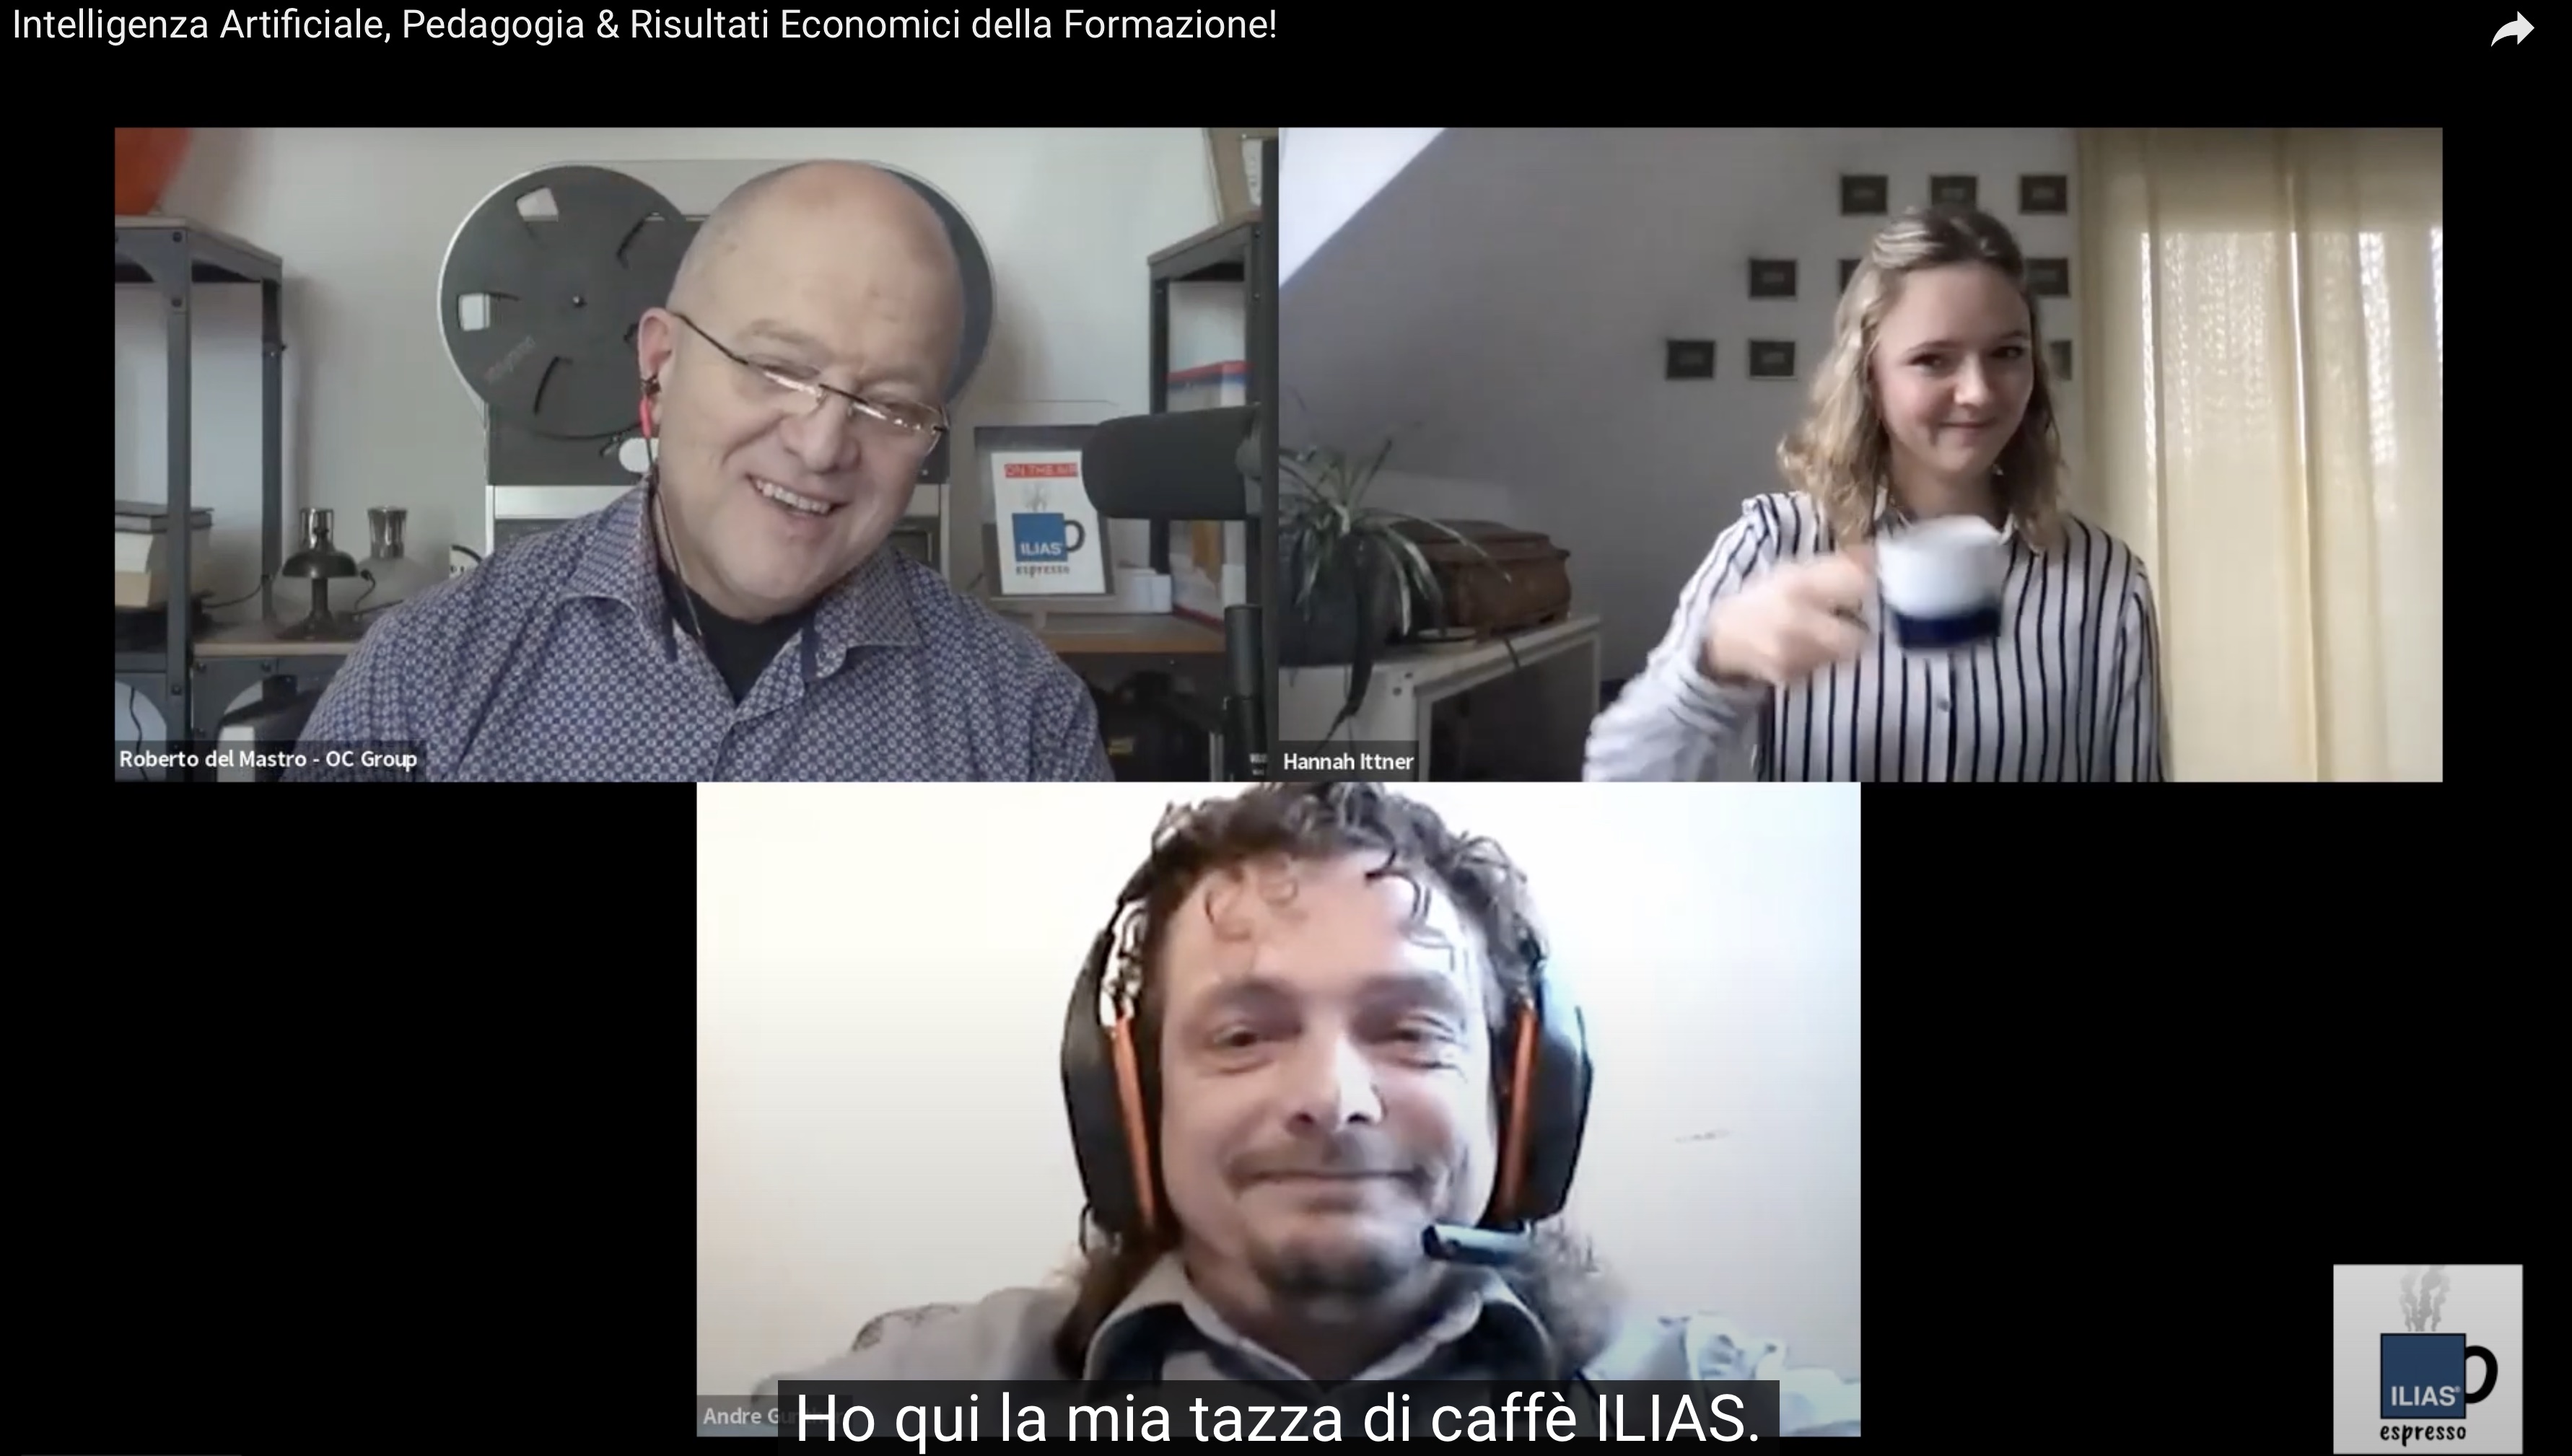 Minervis und ILIAS Espresso im Gespräch